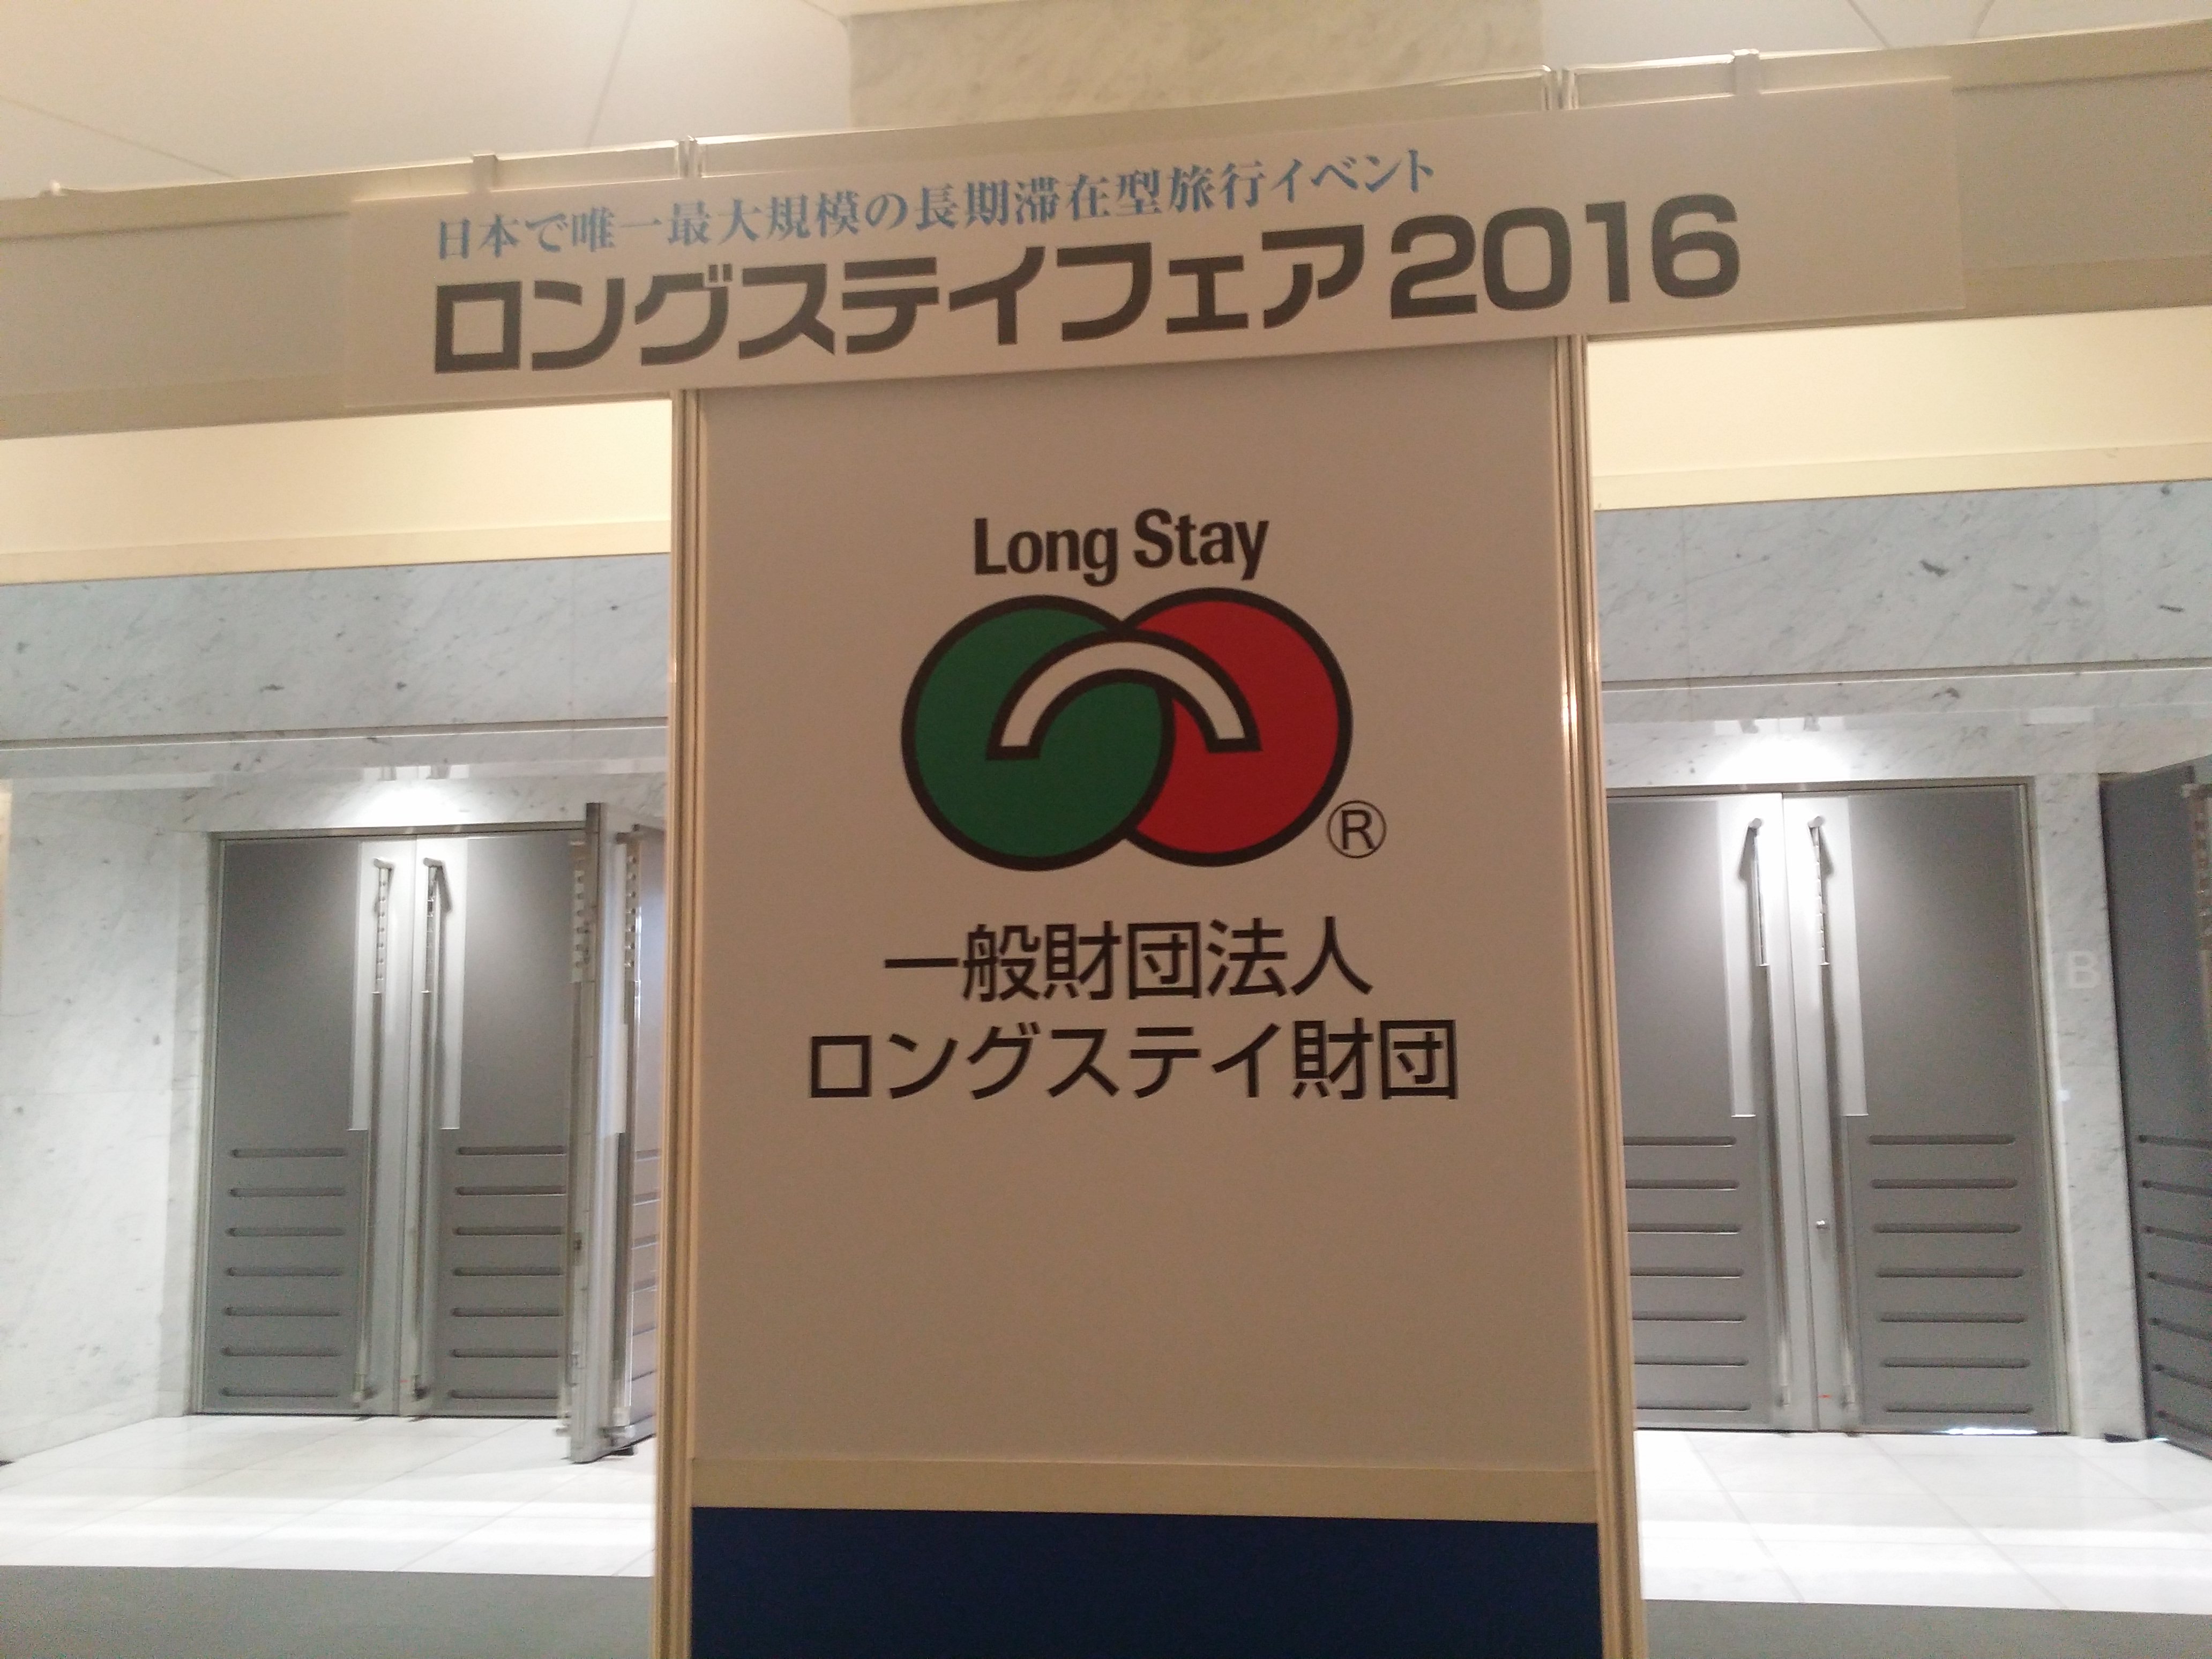 ロングステイフェア2016 in 東京